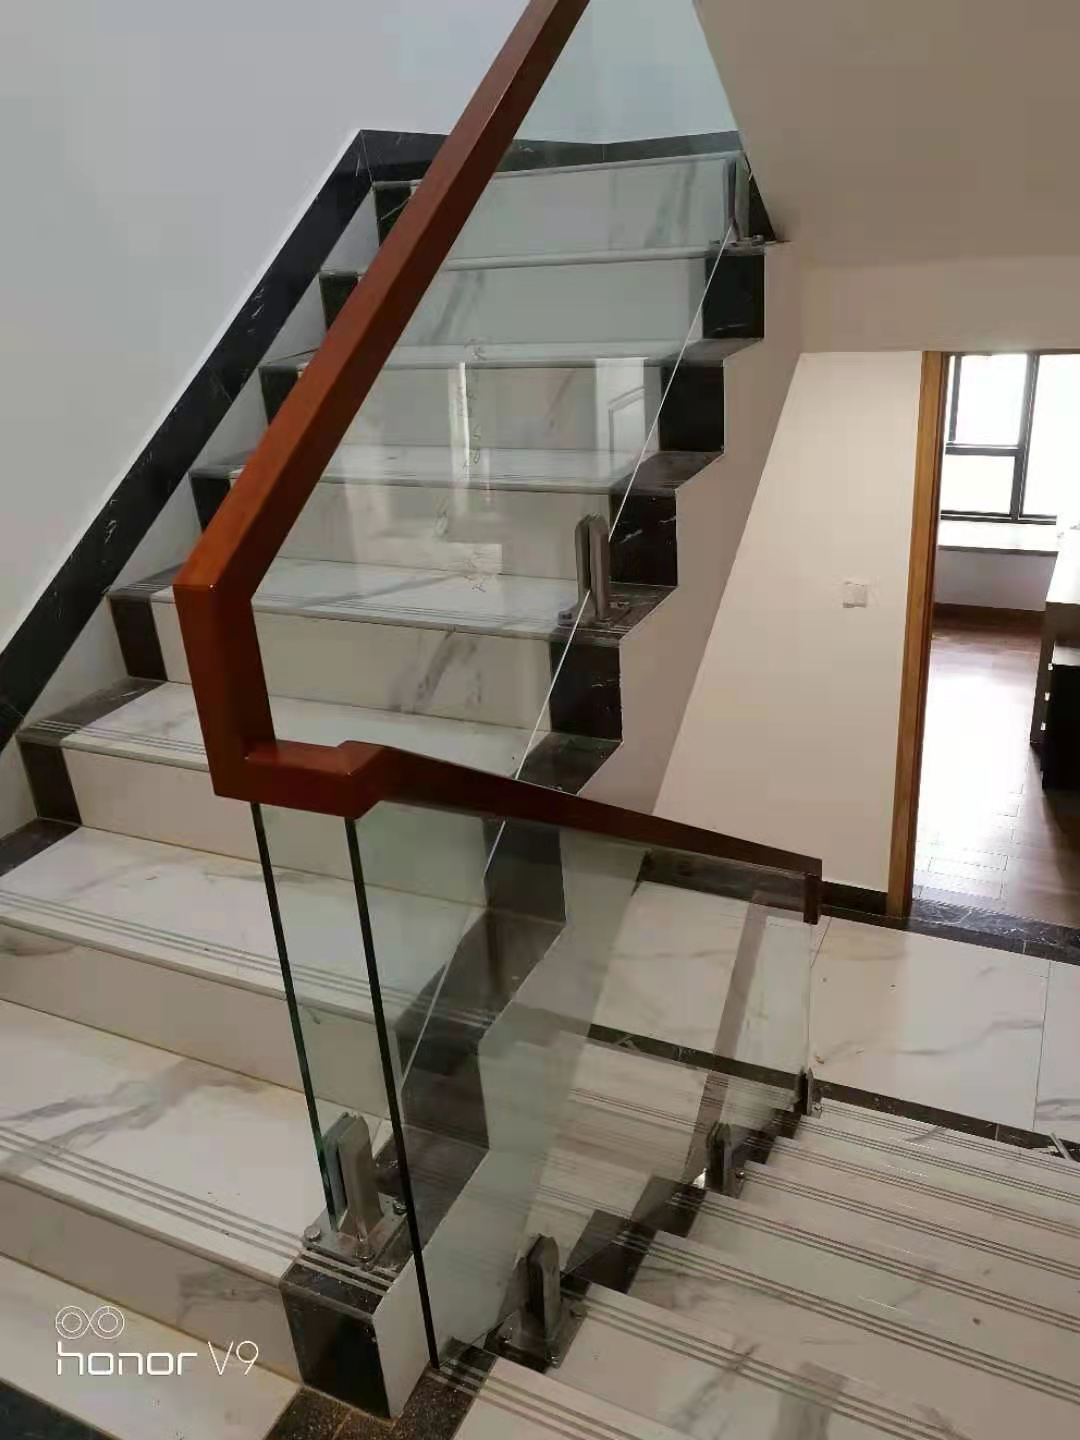 供应深圳玻璃楼梯定制电话   玻璃楼梯厂家供应批发价格 深圳家居玻璃楼梯